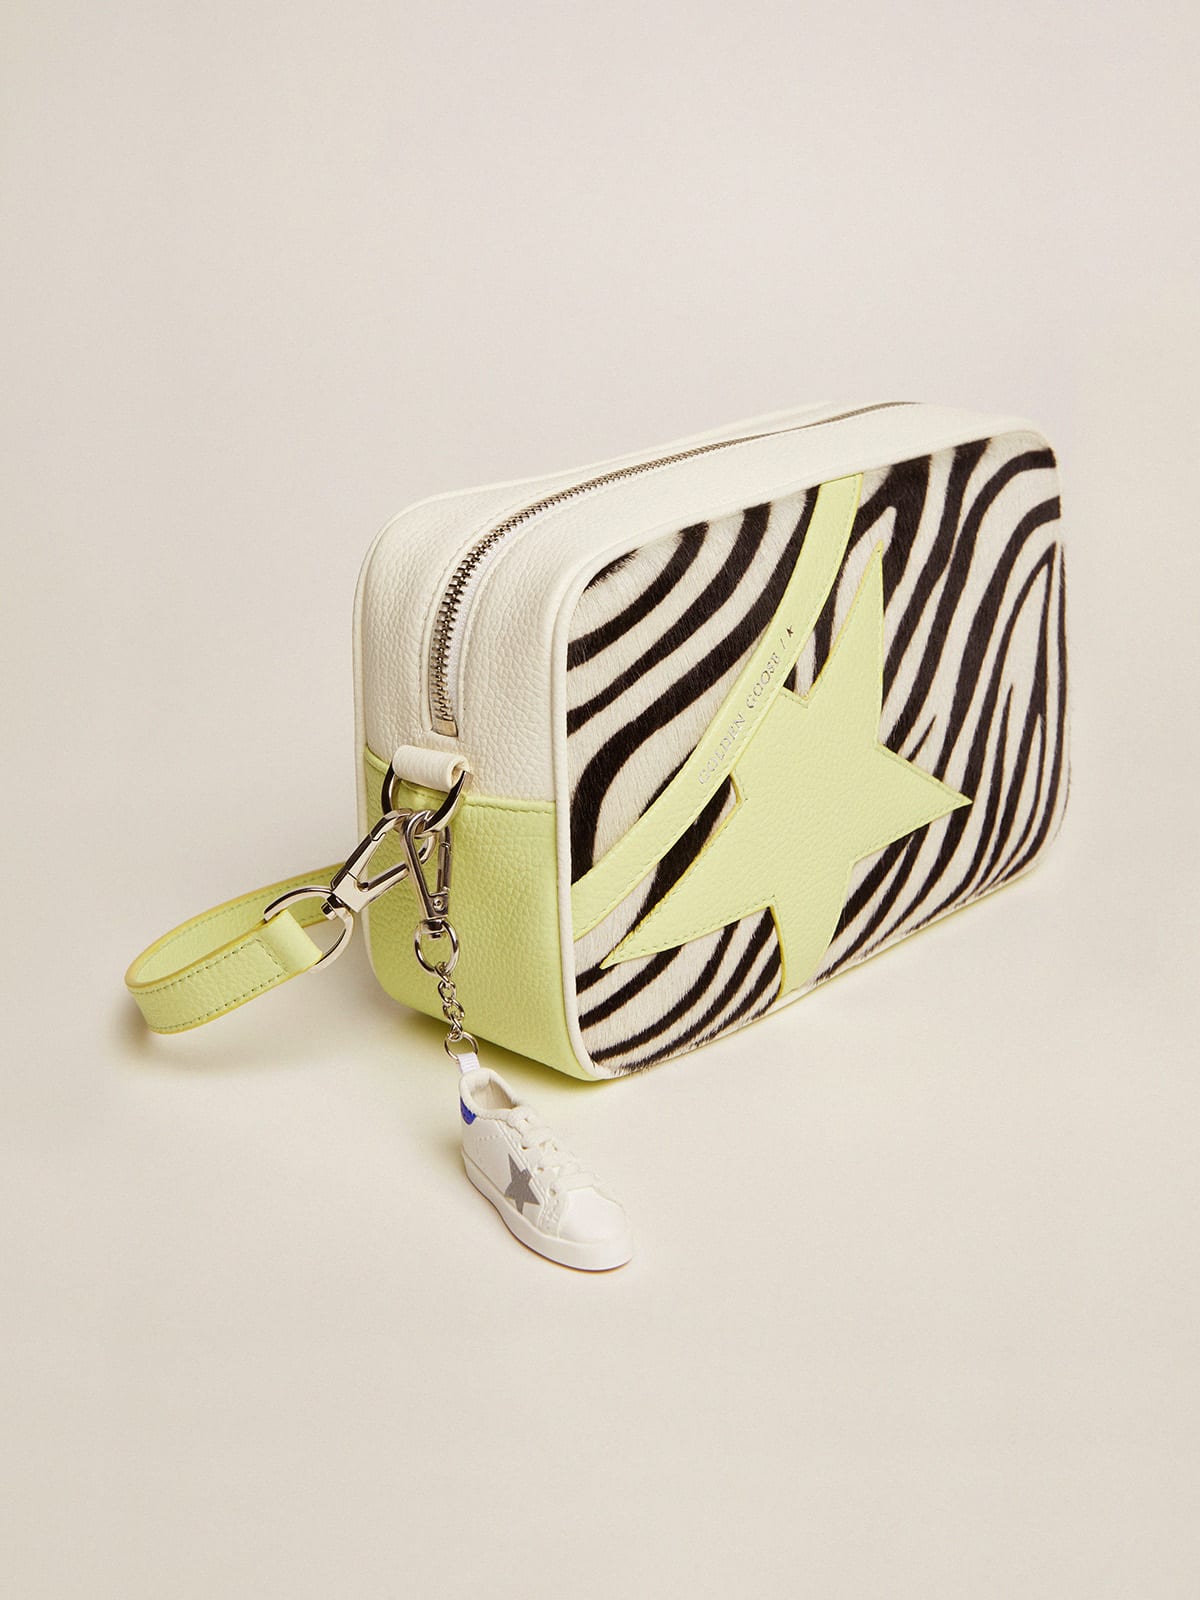 Golden Goose - Borsa Star Bag in pelle martellata color bianco e lime con inserto in cavallino zebrato e stella in pelle color lime in 